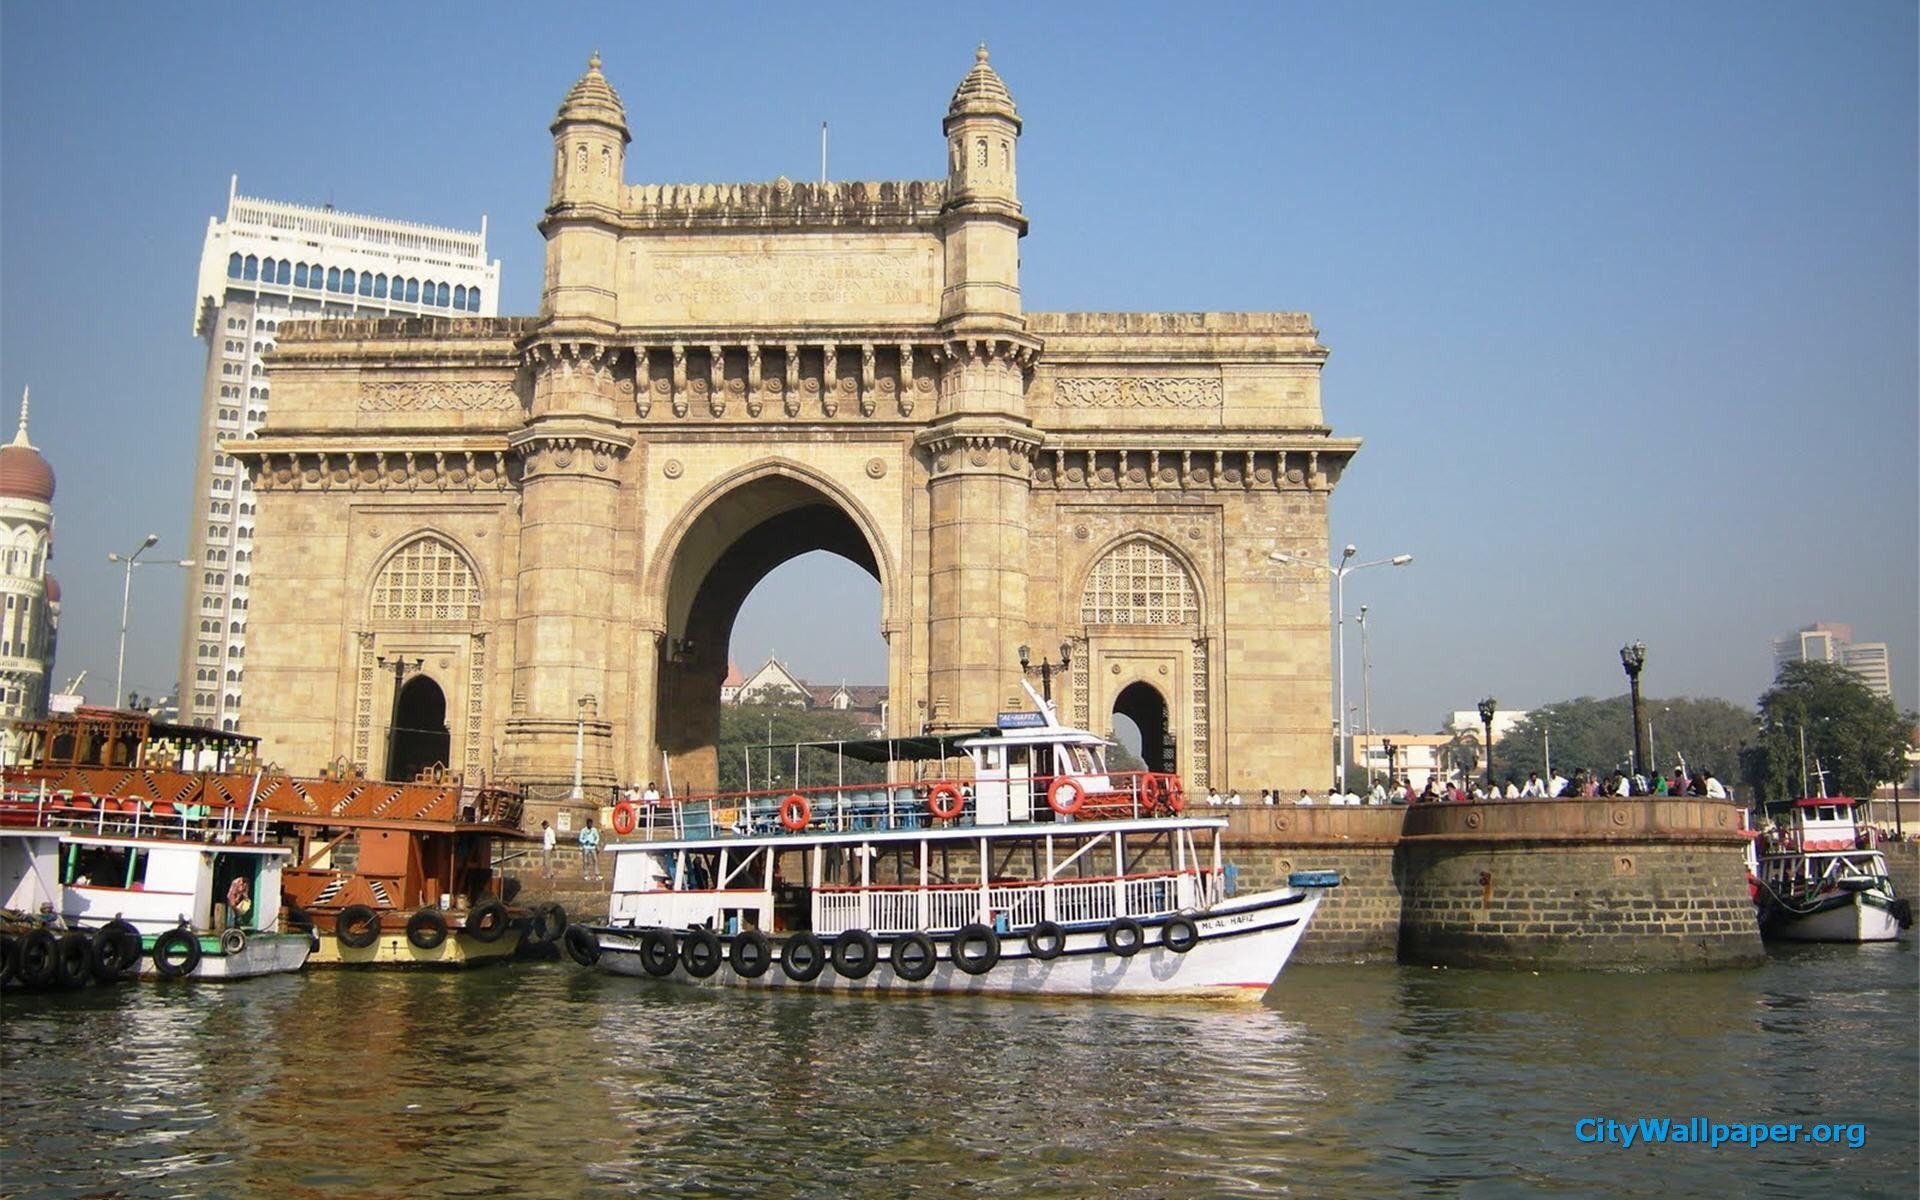 ムンバイ市の壁紙,アーチ橋,水路,建築,観光,建物